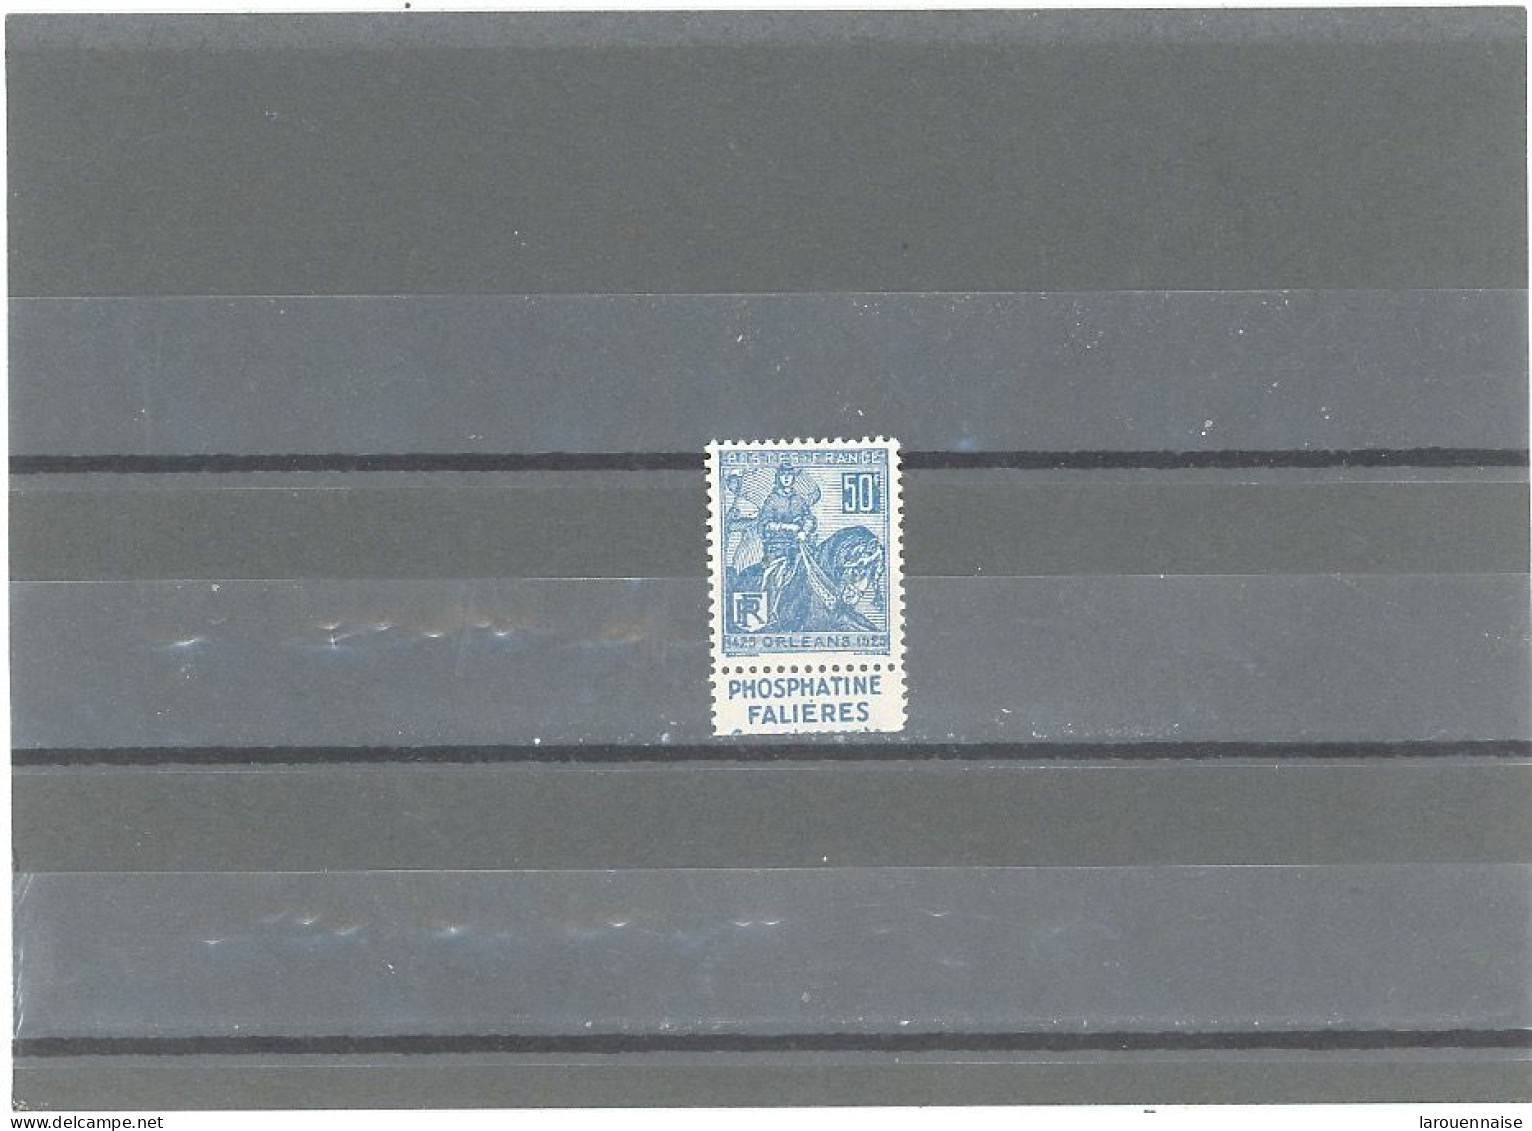 BANDE PUB -N°257 B  N*-JEANNE D'ARC  (TYPE II) PUB FALIÈRES -MAURY 160 - Unused Stamps